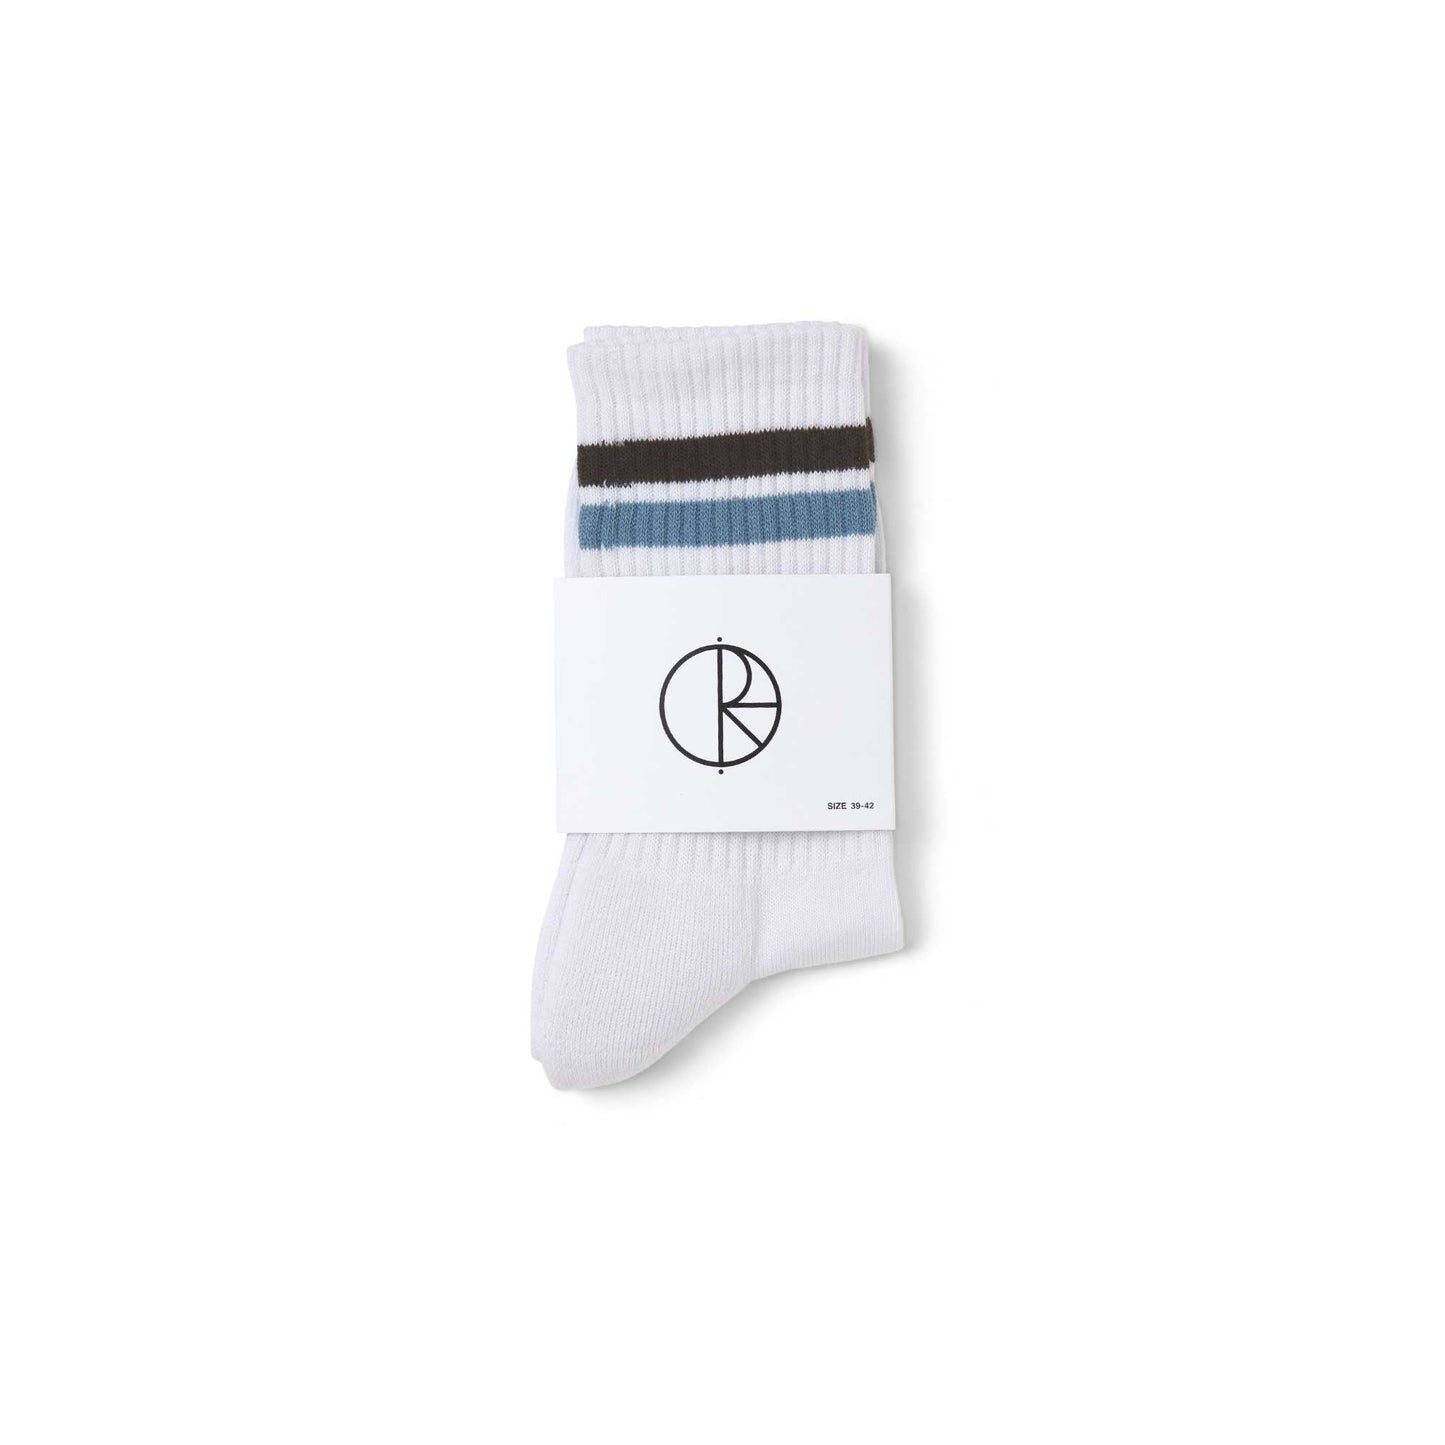 Polar Stripe Socks, White / Brown / Blue - Tiki Room Skateboards - 2